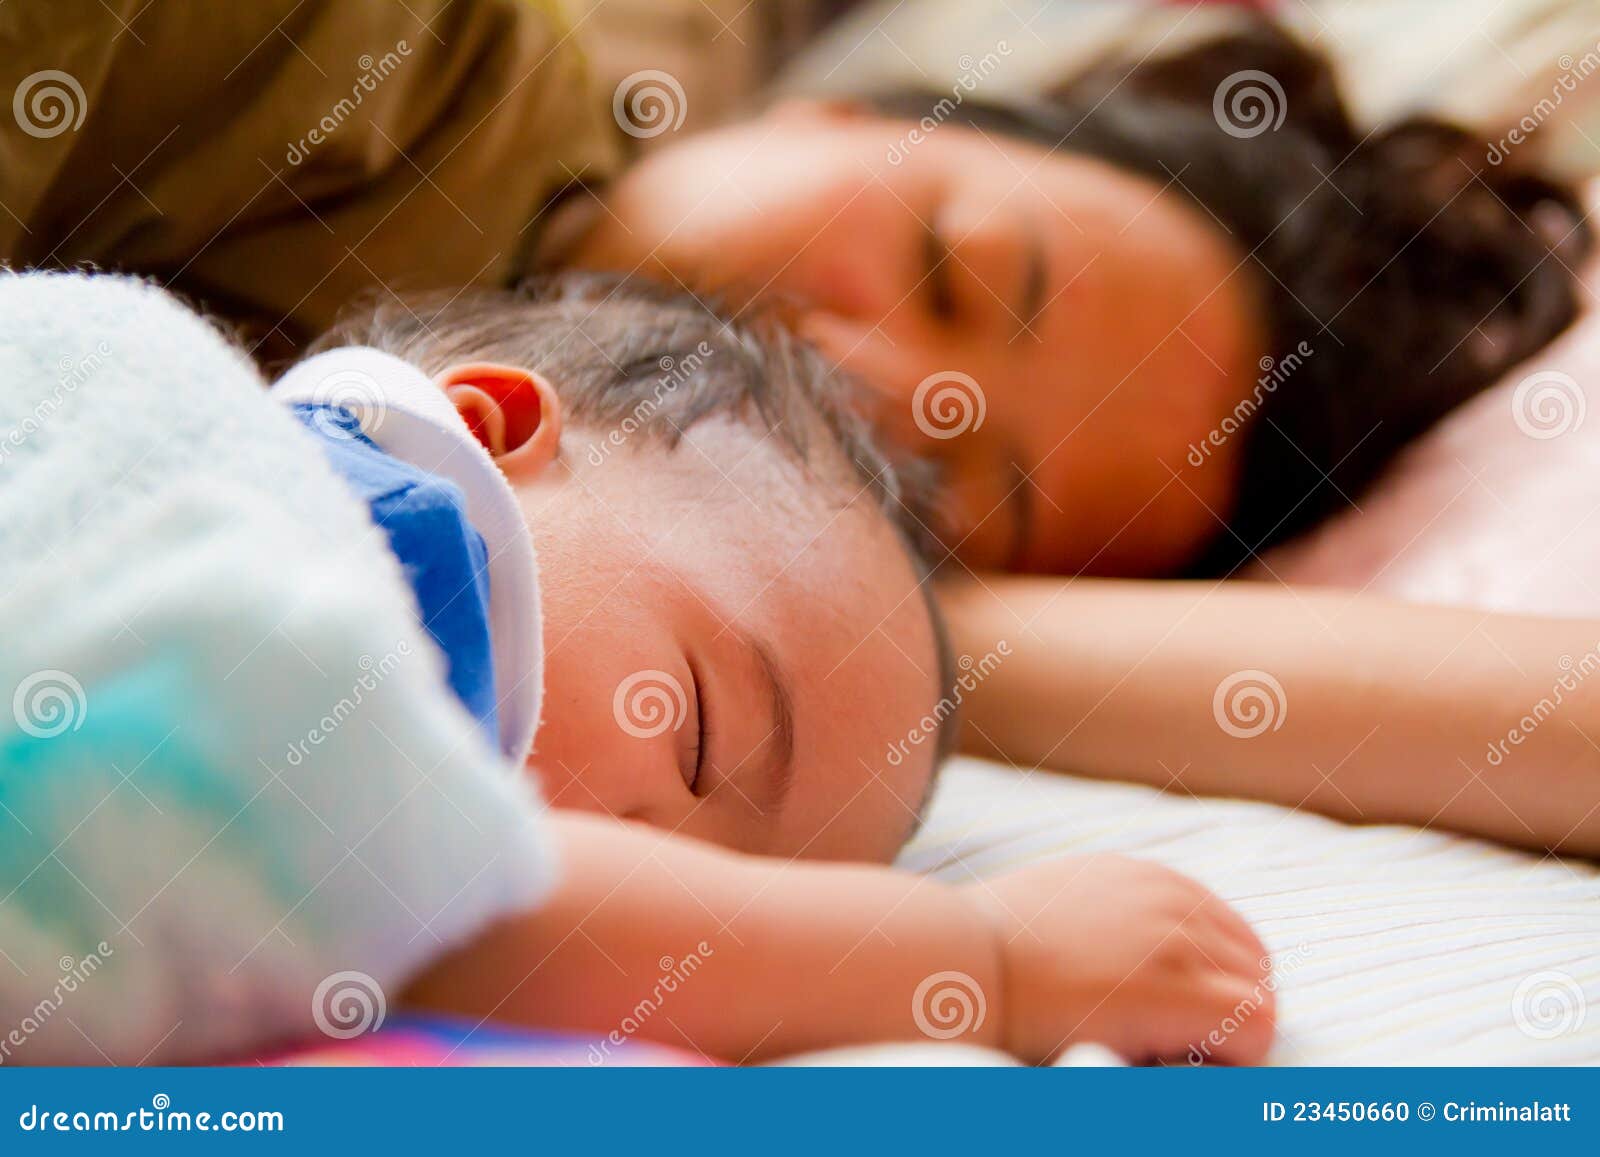 спящая мама азиатка и ее сын фото 113